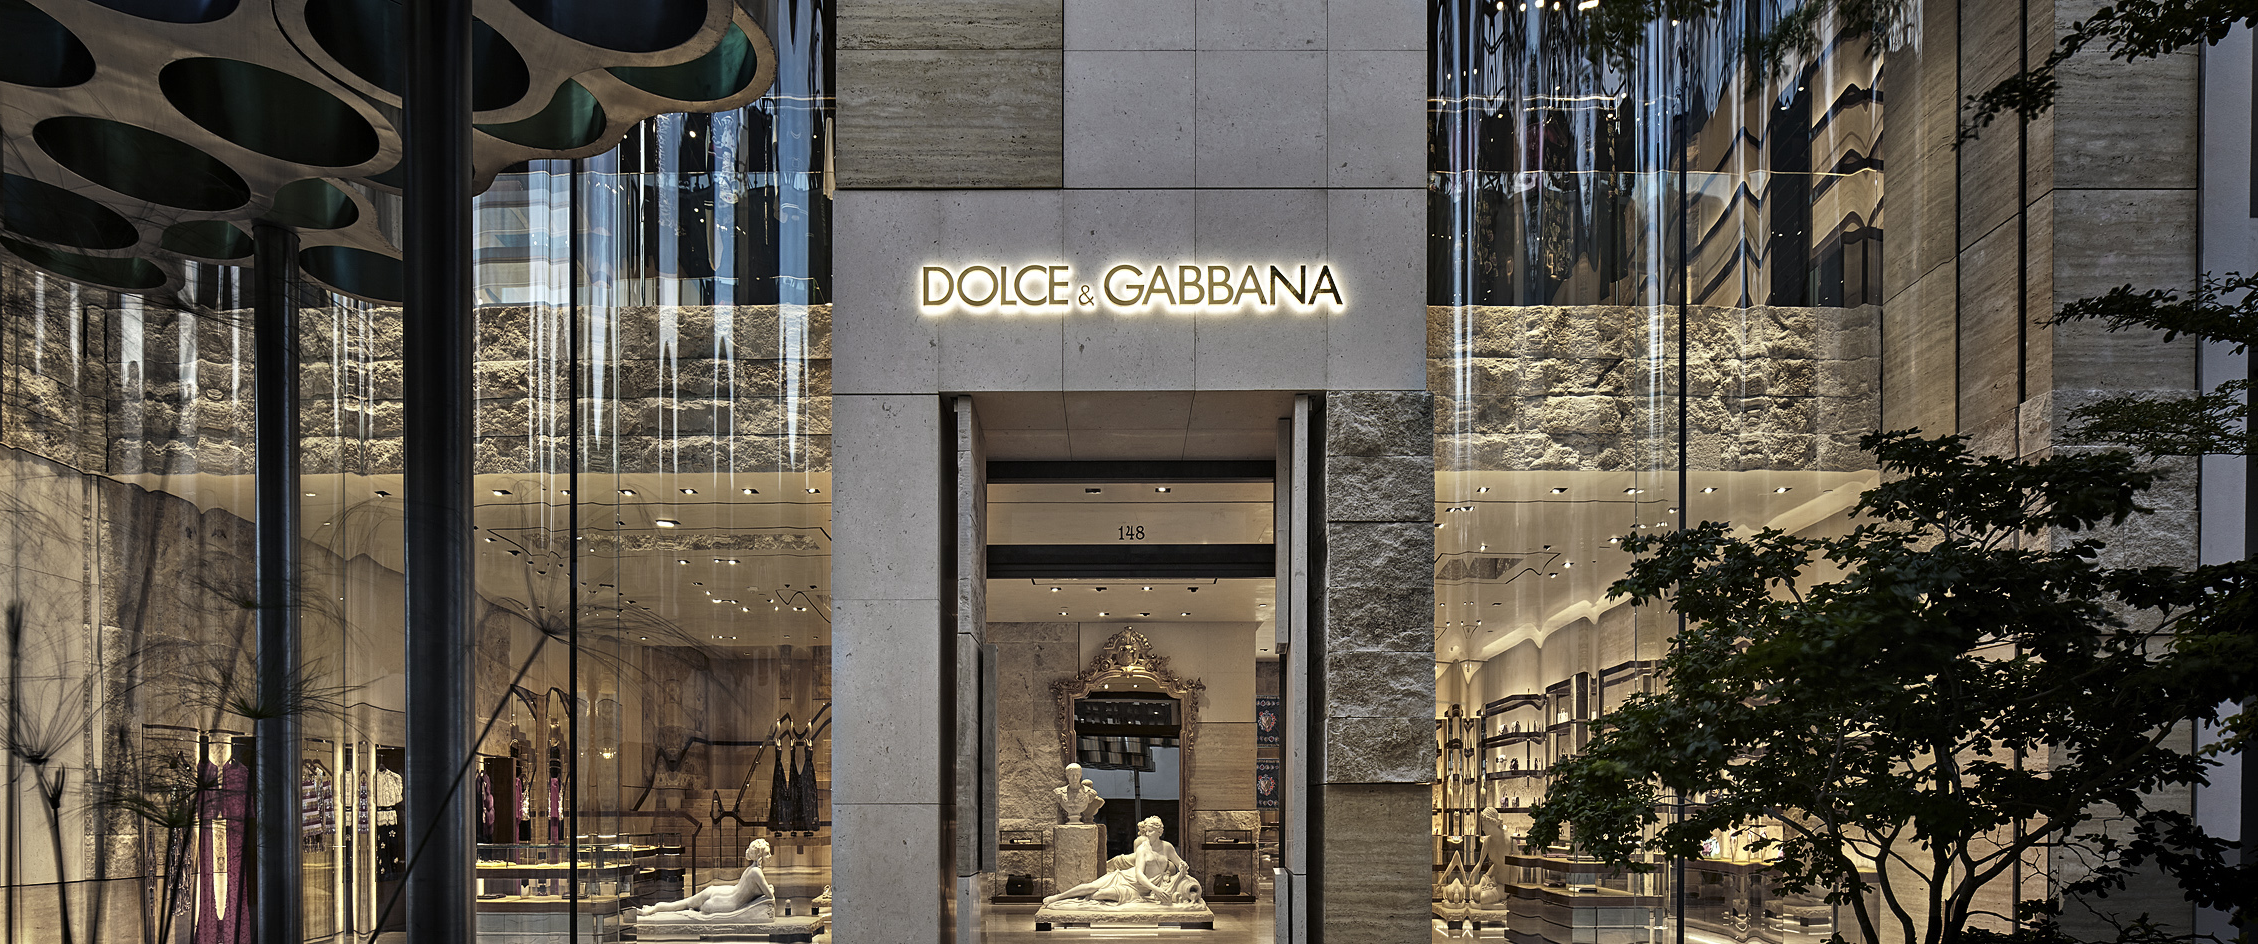 Descubrir 52+ imagen dolce gabbana shop online usa